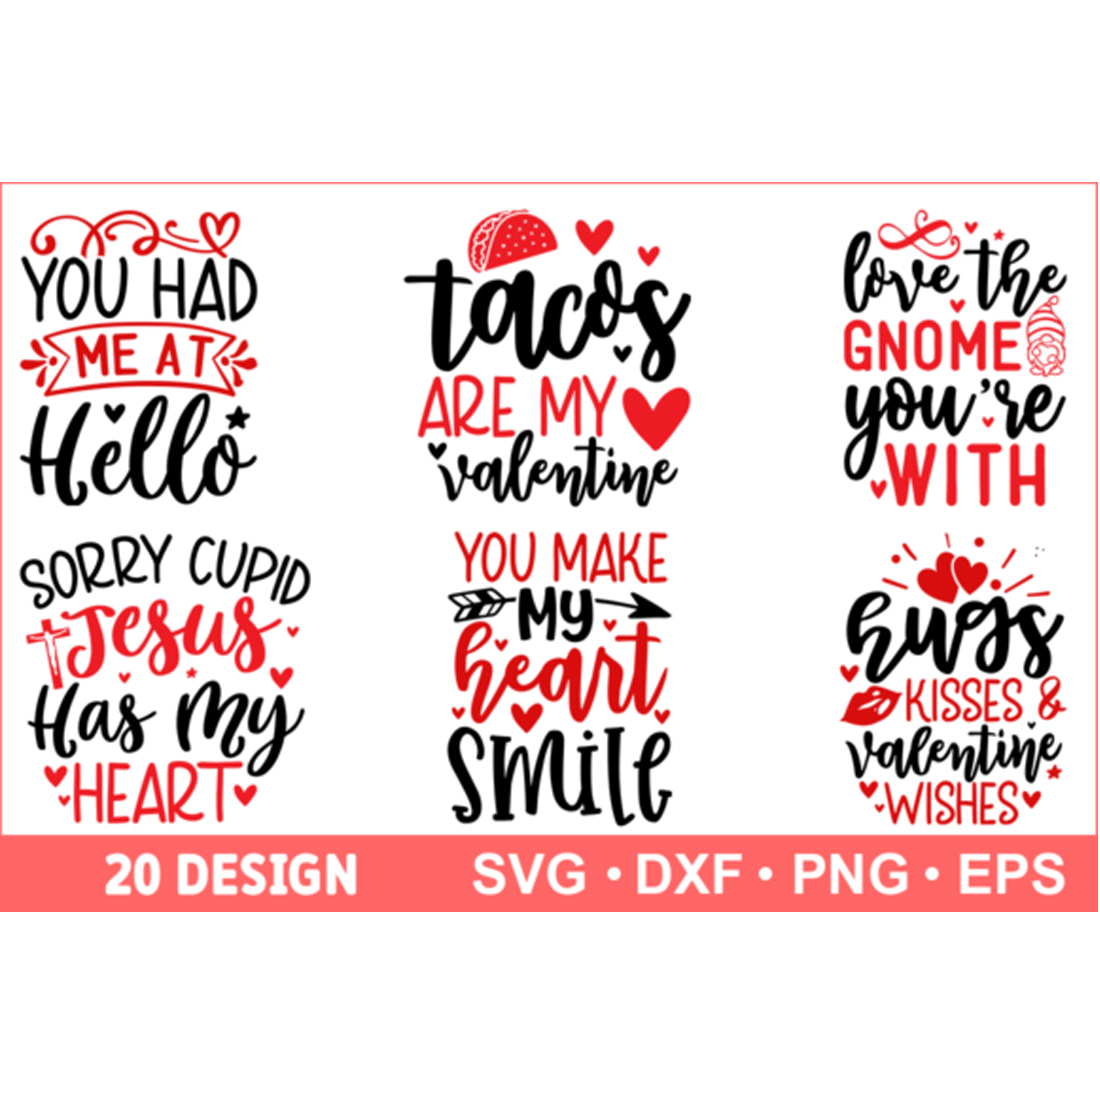 T-shirt Valentine's Day SVG Bundle Design cover image.